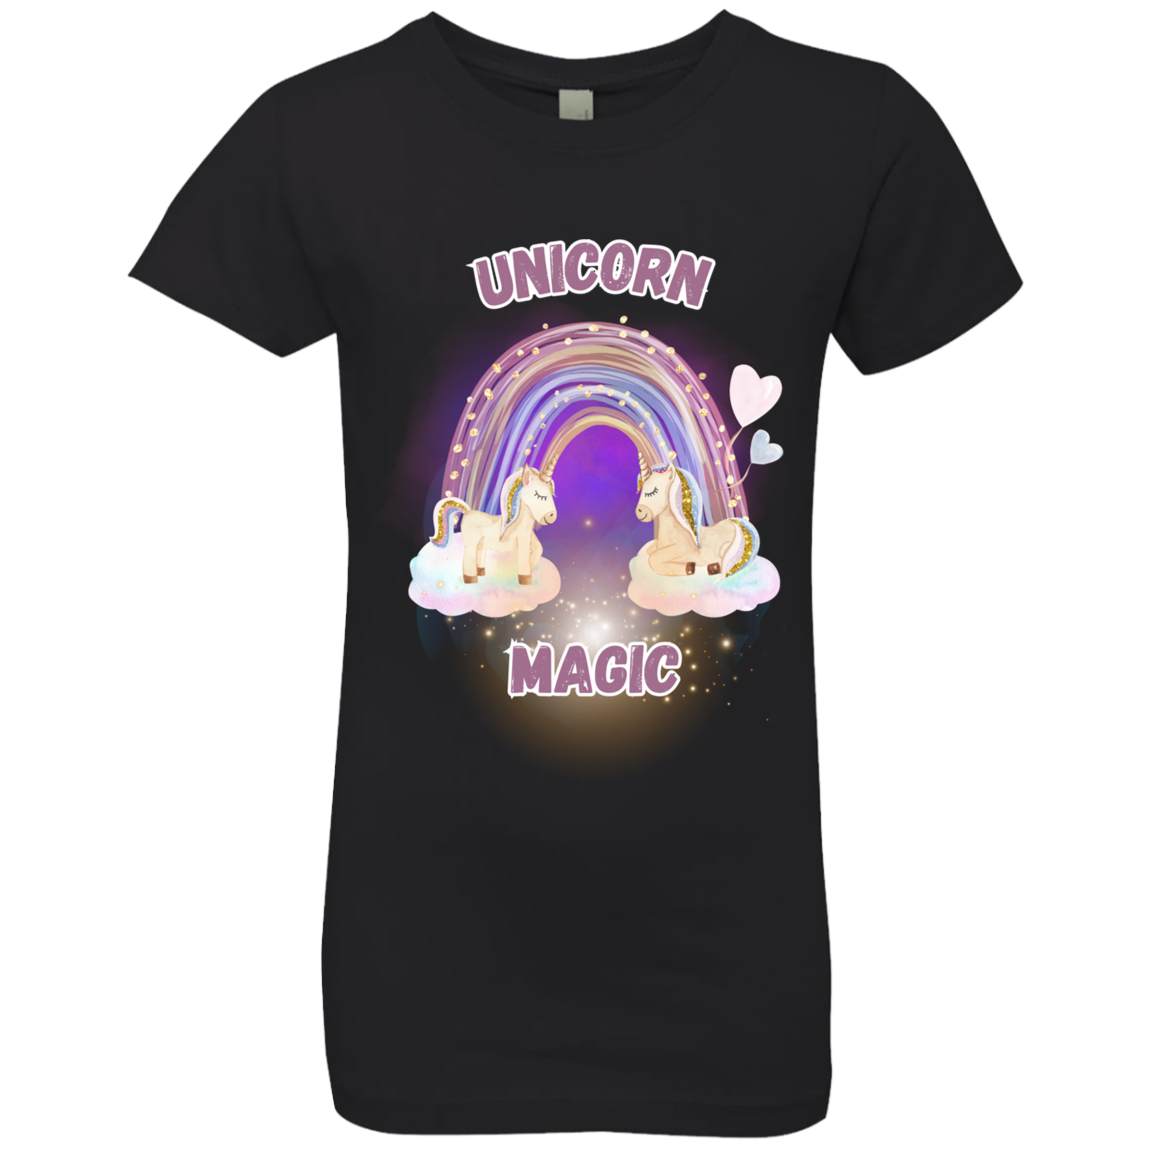 Unicorn Magic - Girls', Teen, Youth T-Shirt